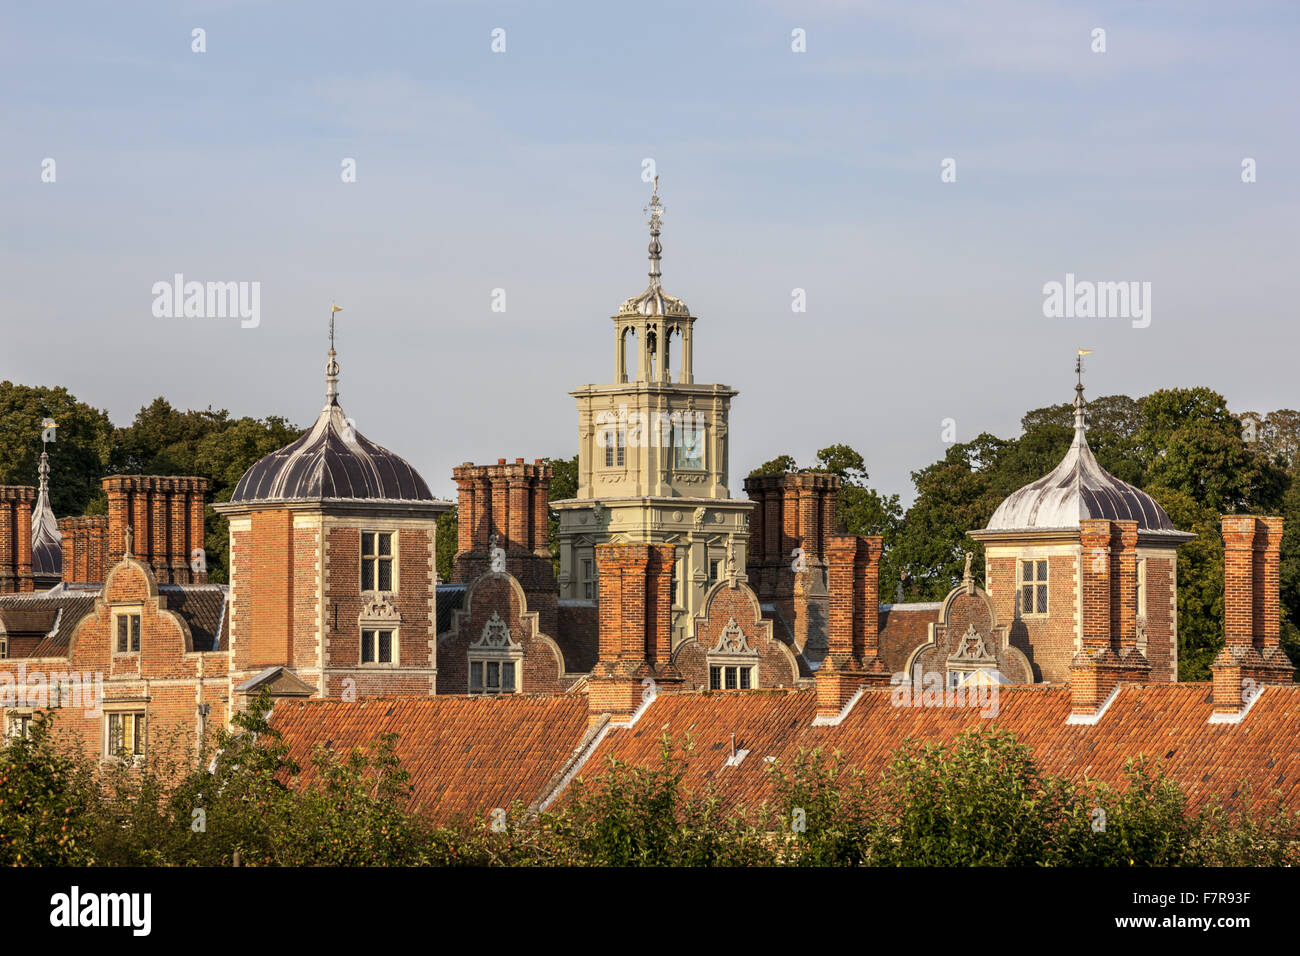 Die Dachlandschaft Blickling Estate, Norfolk. Blickling ist ein Turm aus rotem Backstein jakobinischen Herrenhaus, sitzen in wunderschönen Gärten und Parks. Stockfoto